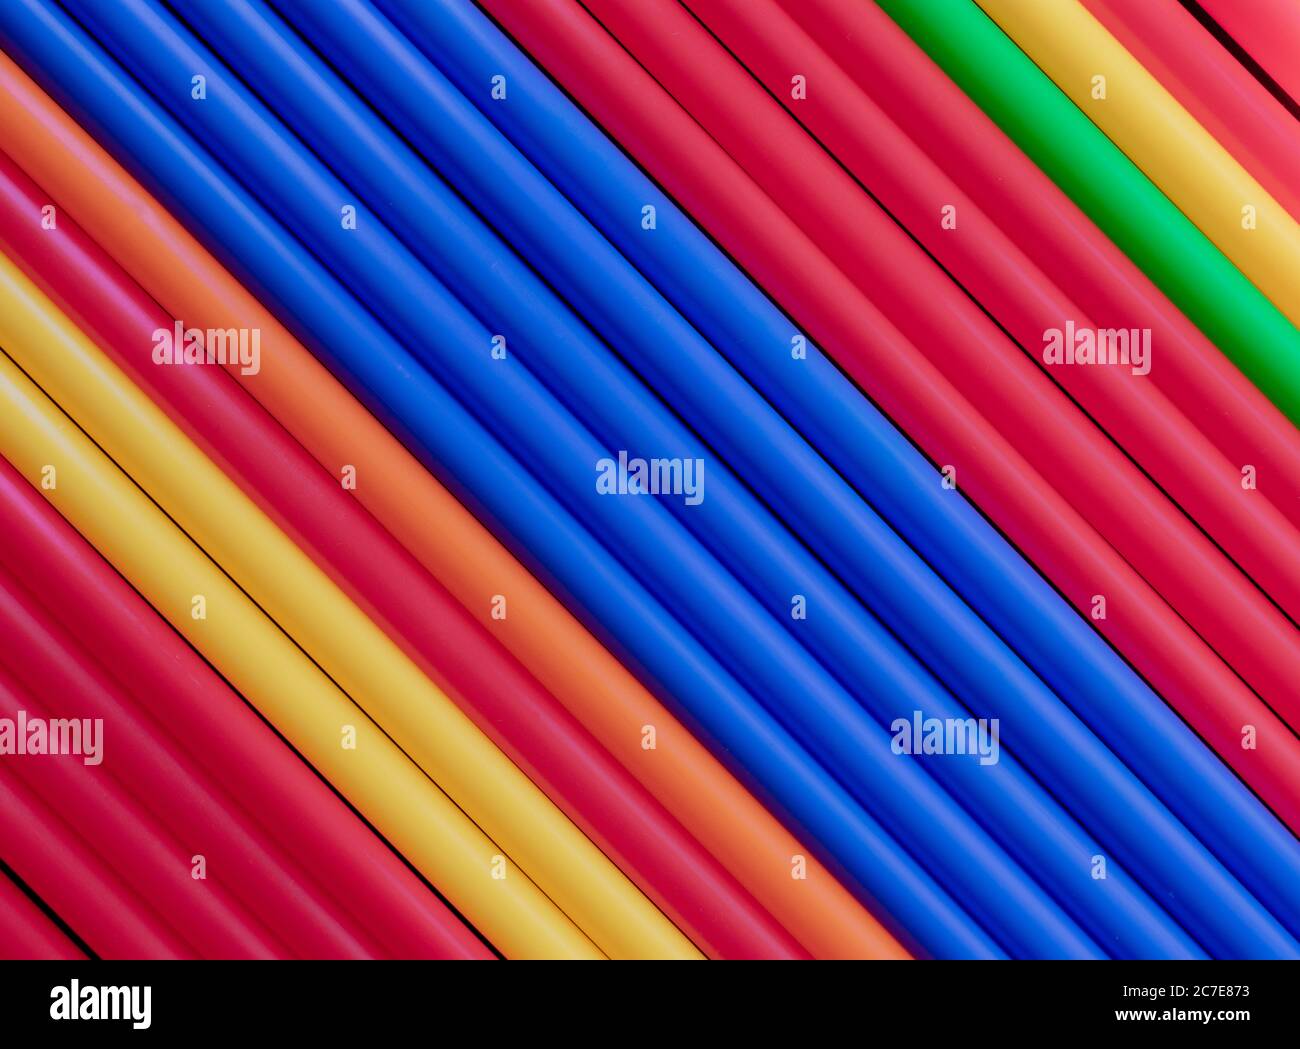 Tubi colorati in plastica si stagliano su fondo diagonale centrale blu Foto Stock